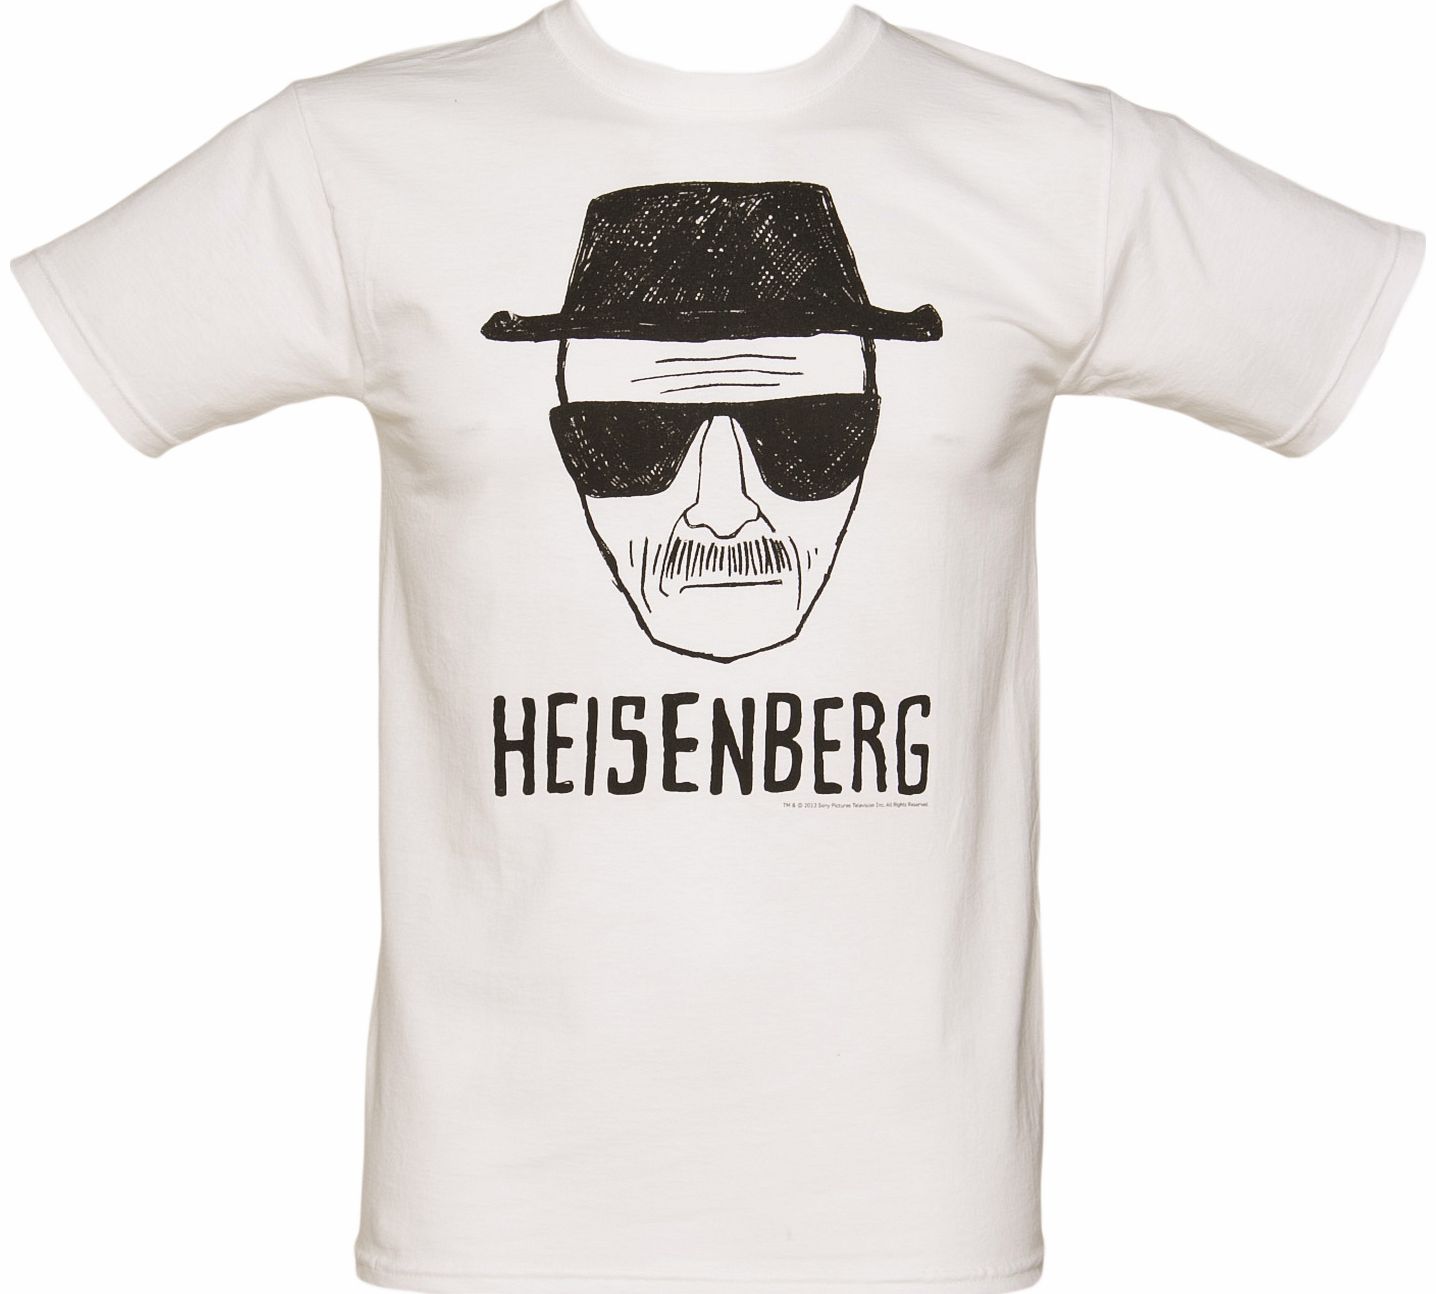 Mens White Heisenberg Sketch Breaking Bad T-Shirt